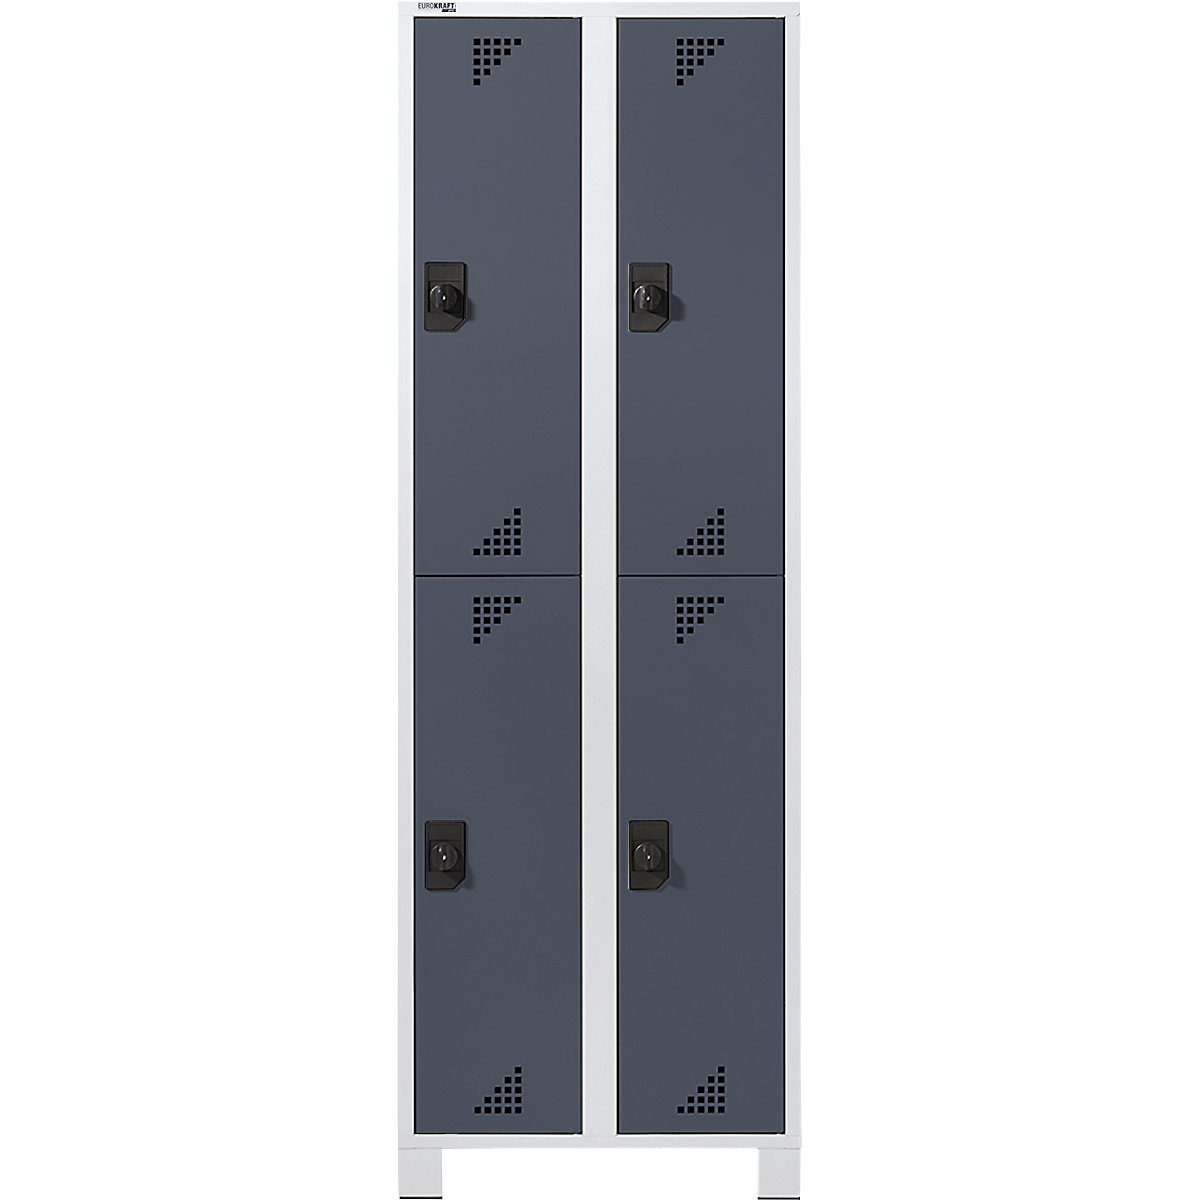 Šatní skříň s oddíly v poloviční výšce – eurokraft pro, v x š x h 1800 x 600 x 500 mm, 4 oddíly, korpus světle šedý, dveře antracitově šedé-5